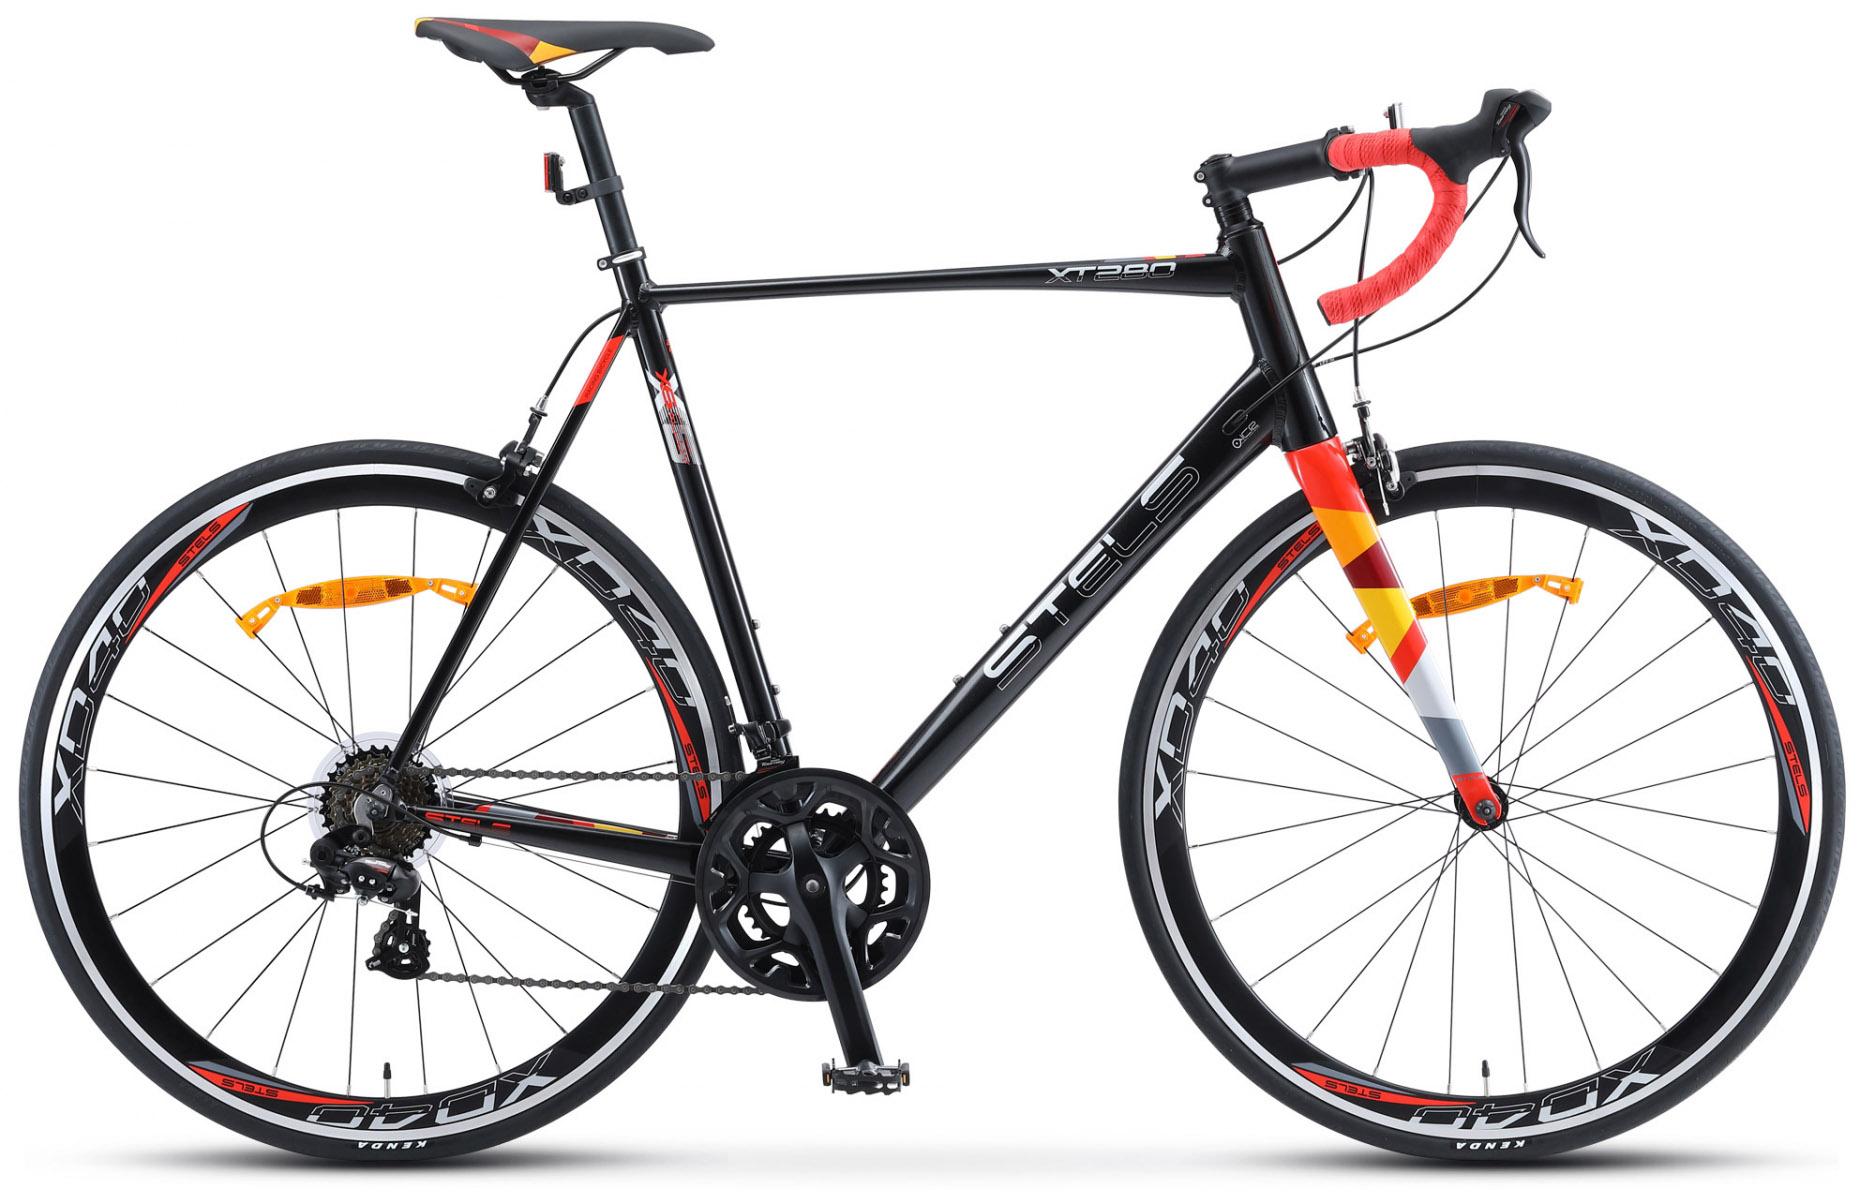  Отзывы о Шоссейном велосипеде Stels XT 280 V010 2020